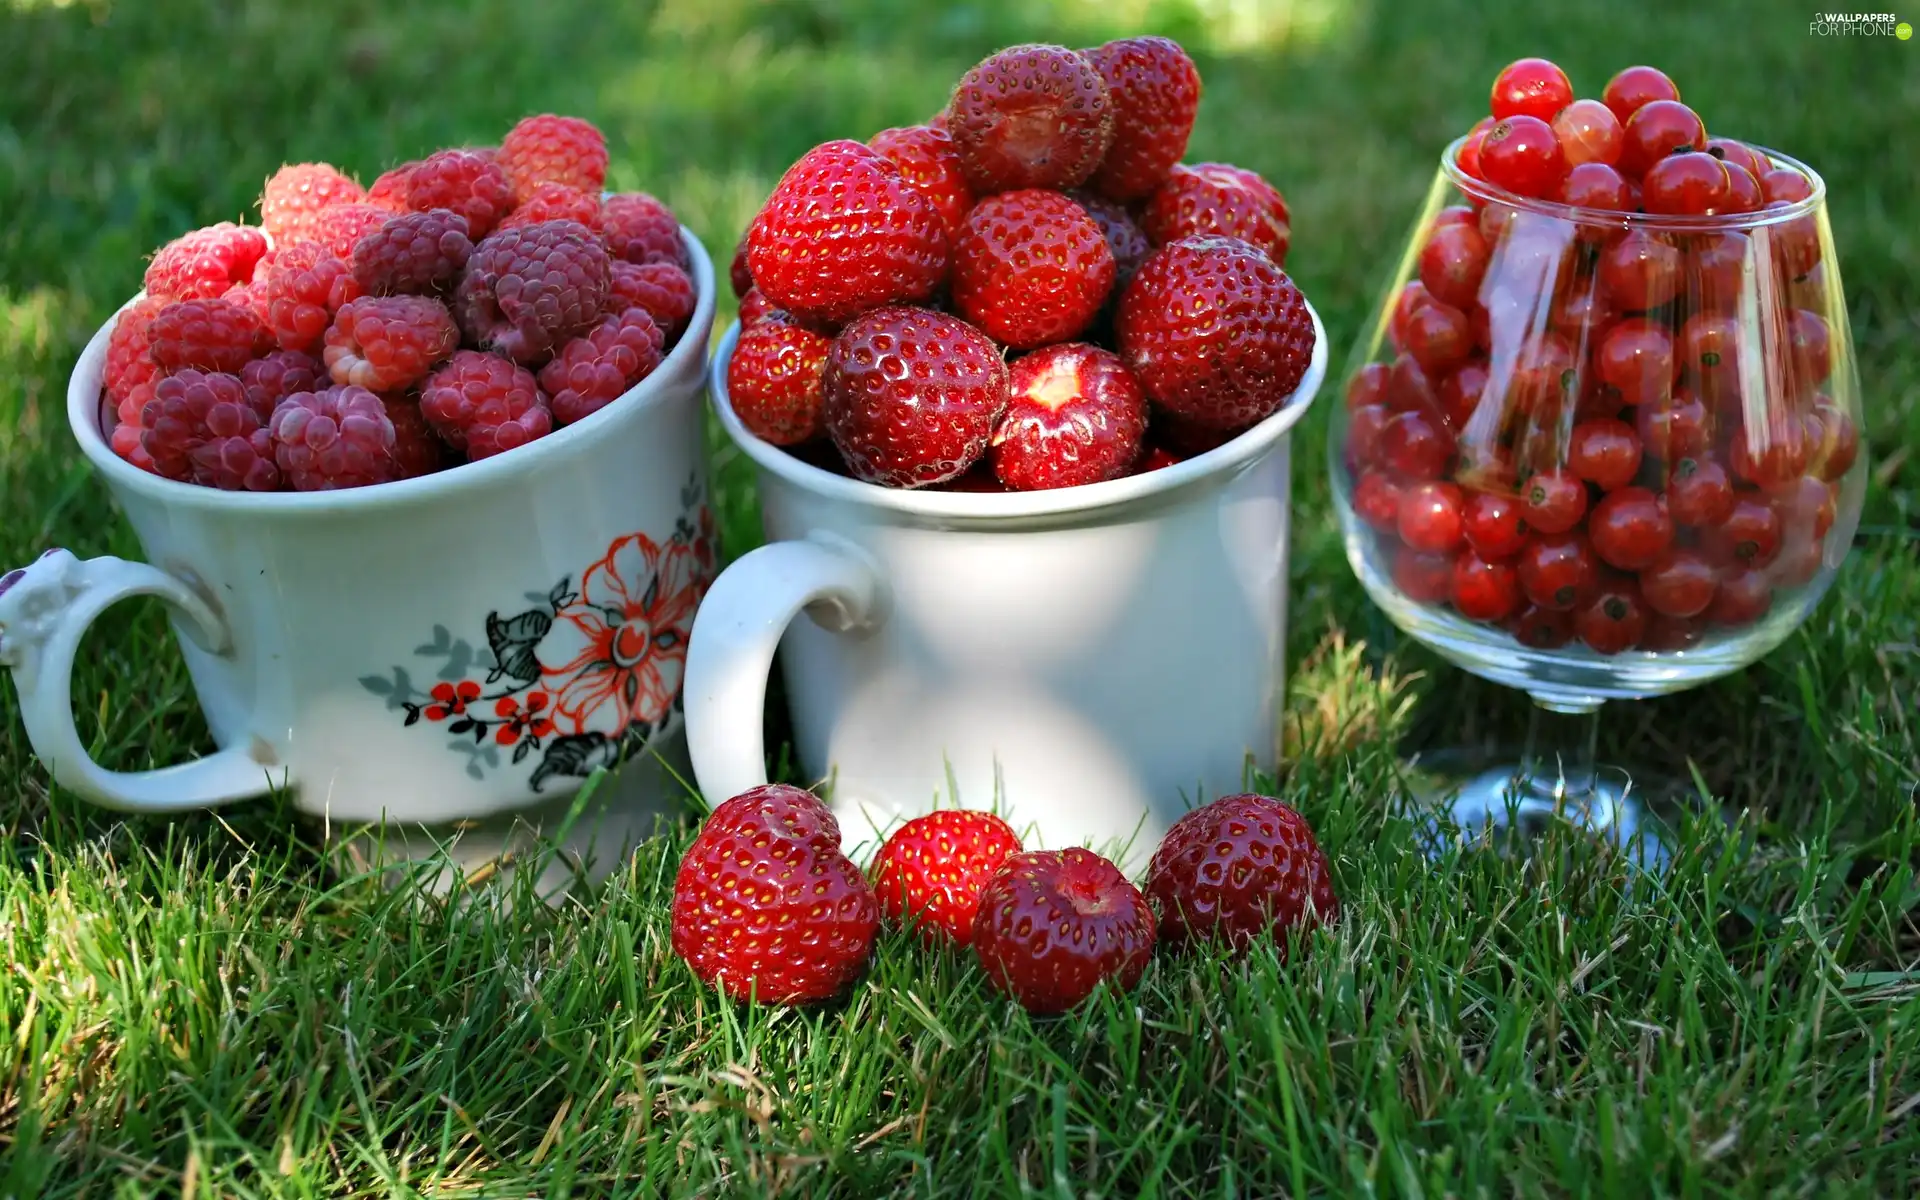 currants, raspberries, Strawberries